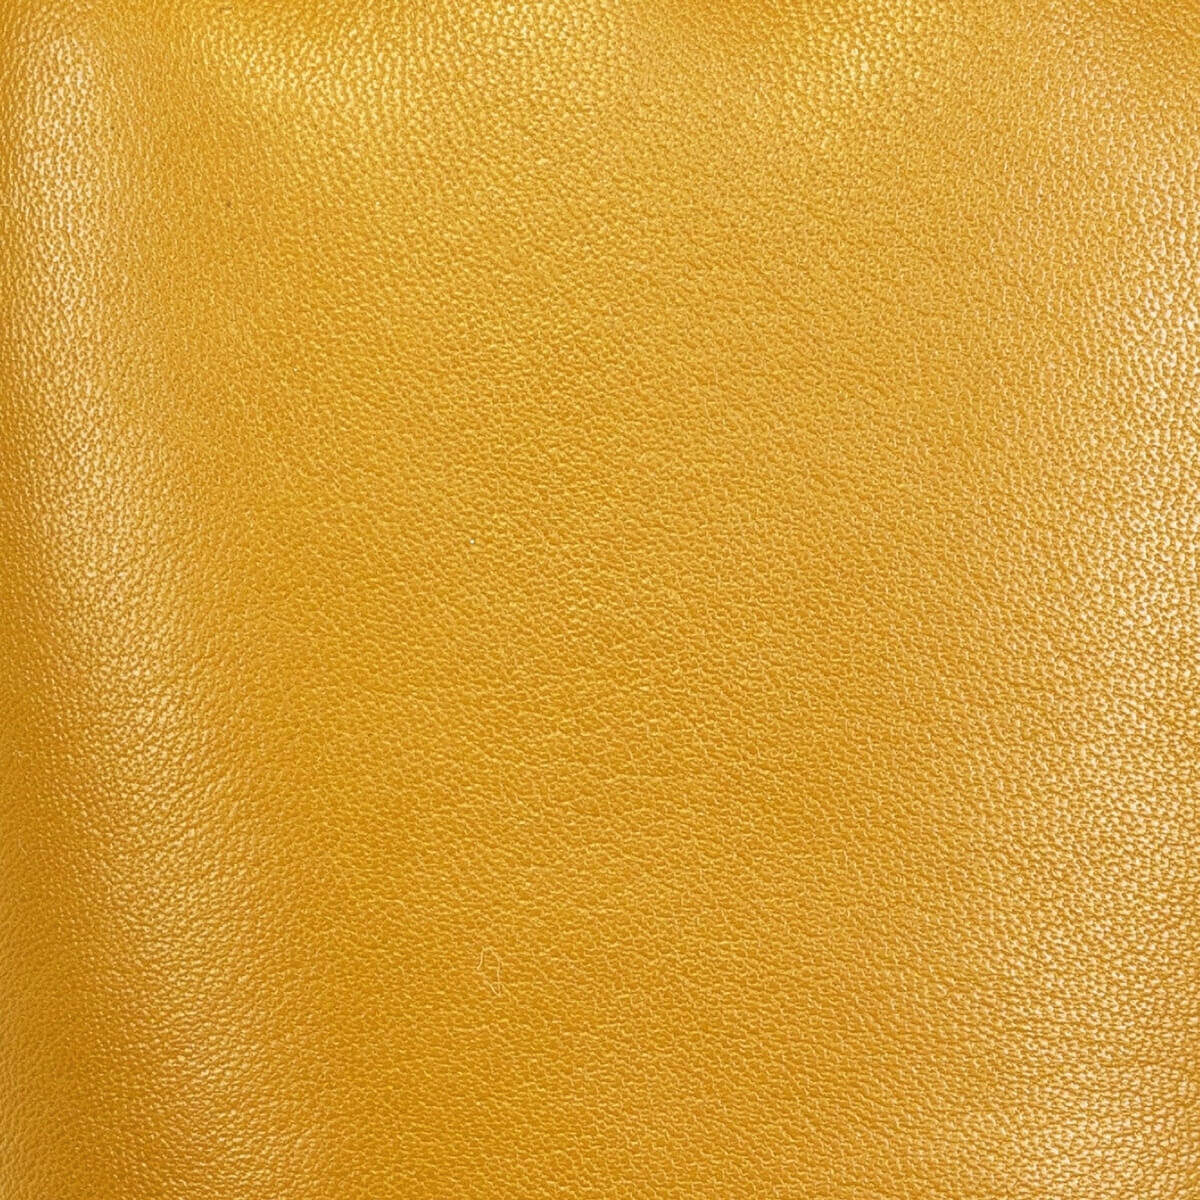 Gants en cuir jaune pour femmes - écran tactile - doublure en cachemire - Gants en cuir haut de gamme - Conçus à Amsterdam - Schwartz & von Halen® - 4